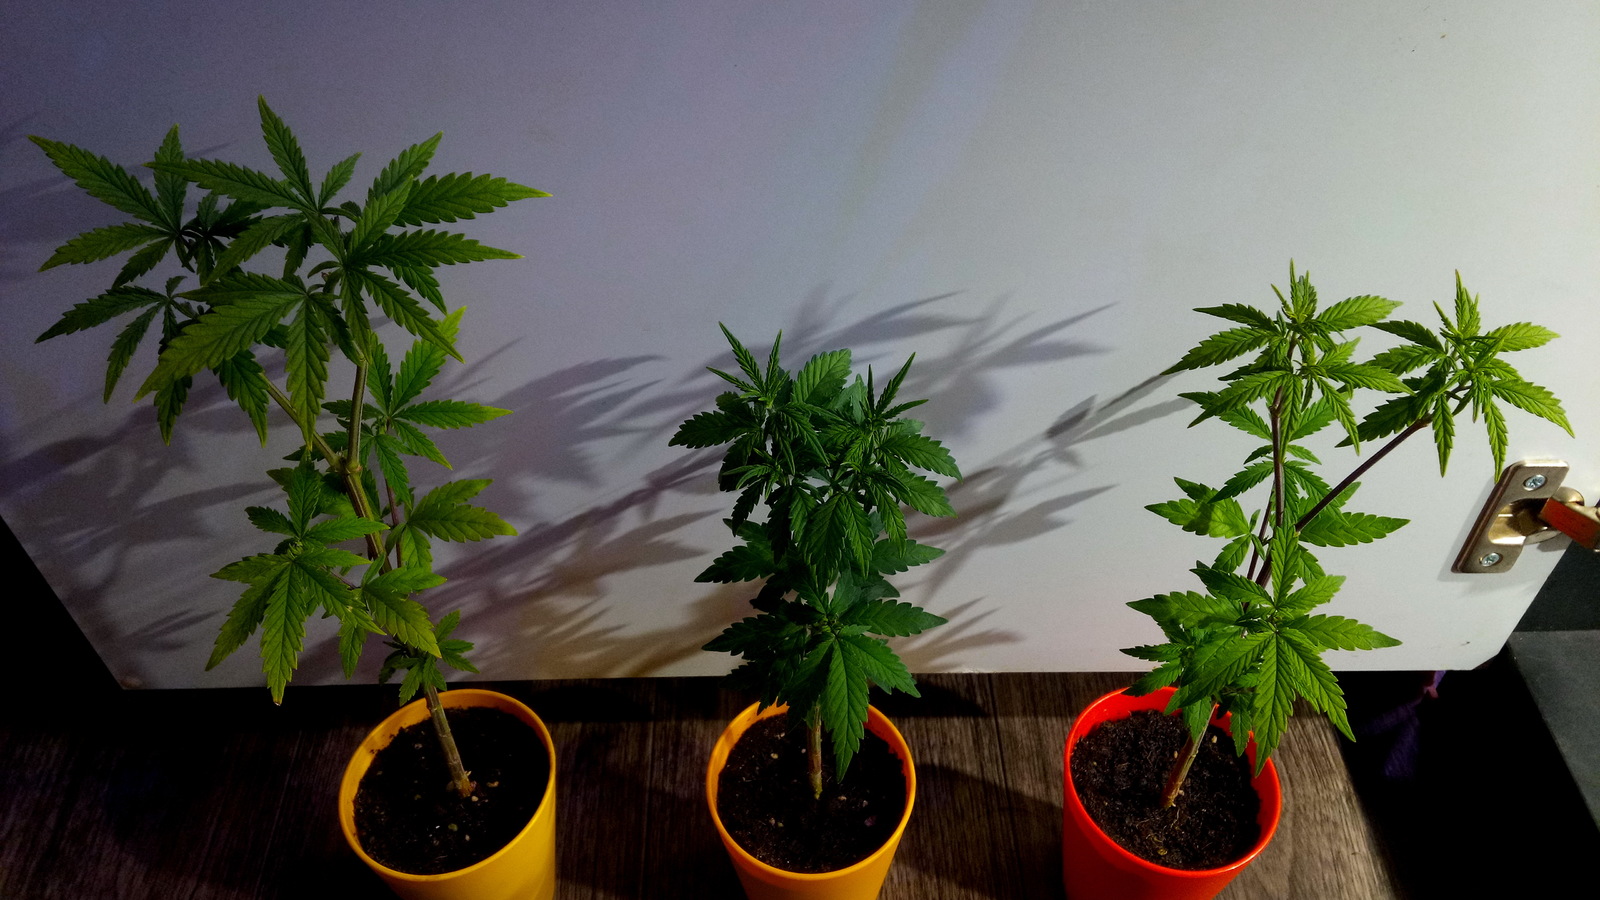 выращивание марихуаны размеры горшков